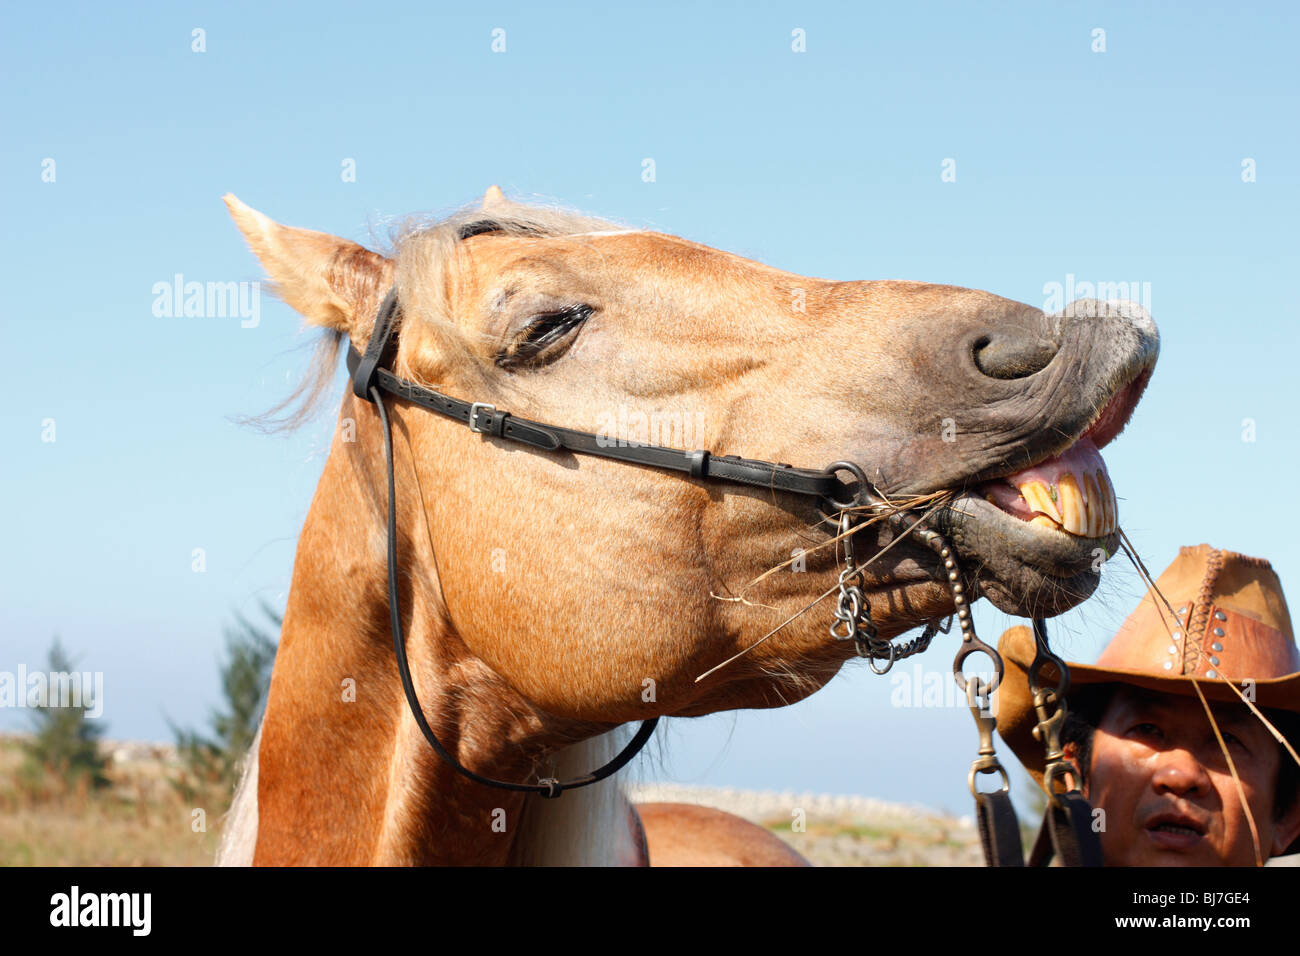 Smiling horse and horseback rider, Tainan, Taiwan Stock Photo